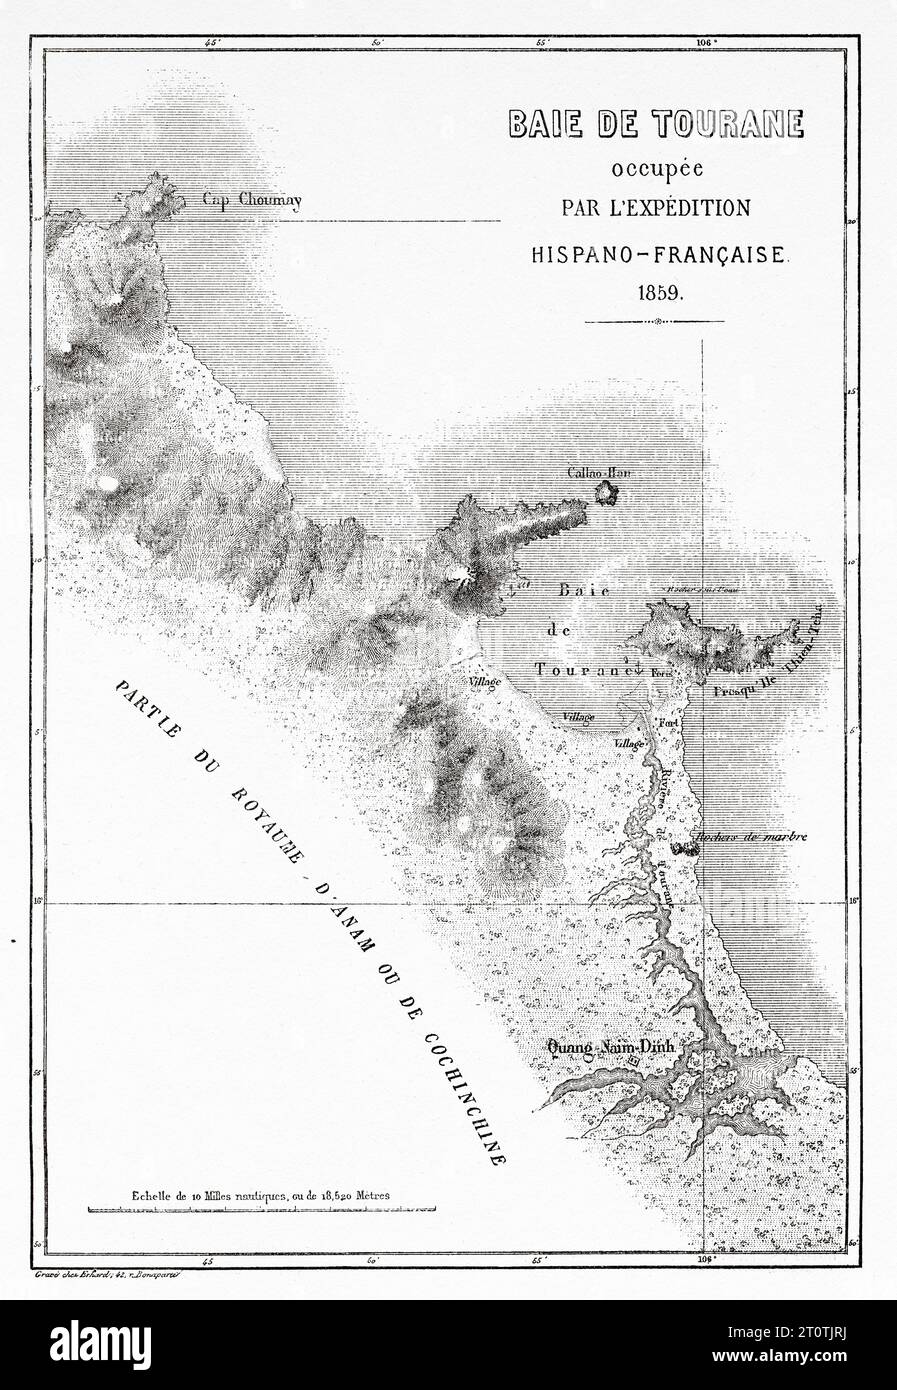 Baie de Tourane occupée par l'expédition française hispano en 1859, Tourane. Vietnam. Indochine. Gravure ancienne du 19e siècle du Tour du monde 1860 Banque D'Images